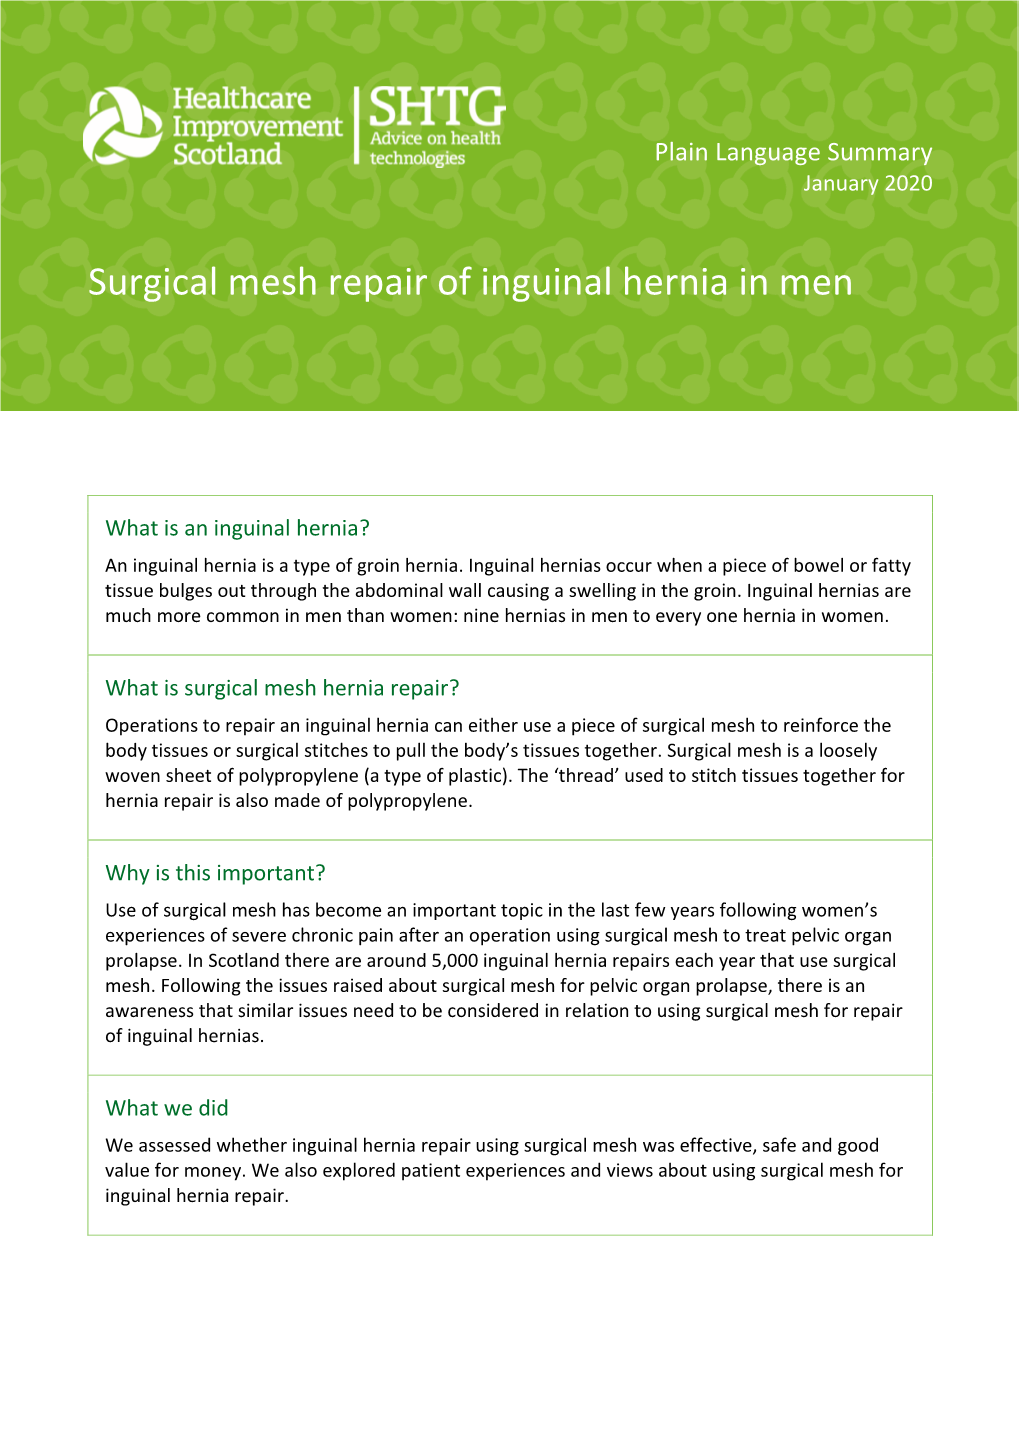 Surgical Mesh Repair of Inguinal Hernia in Men